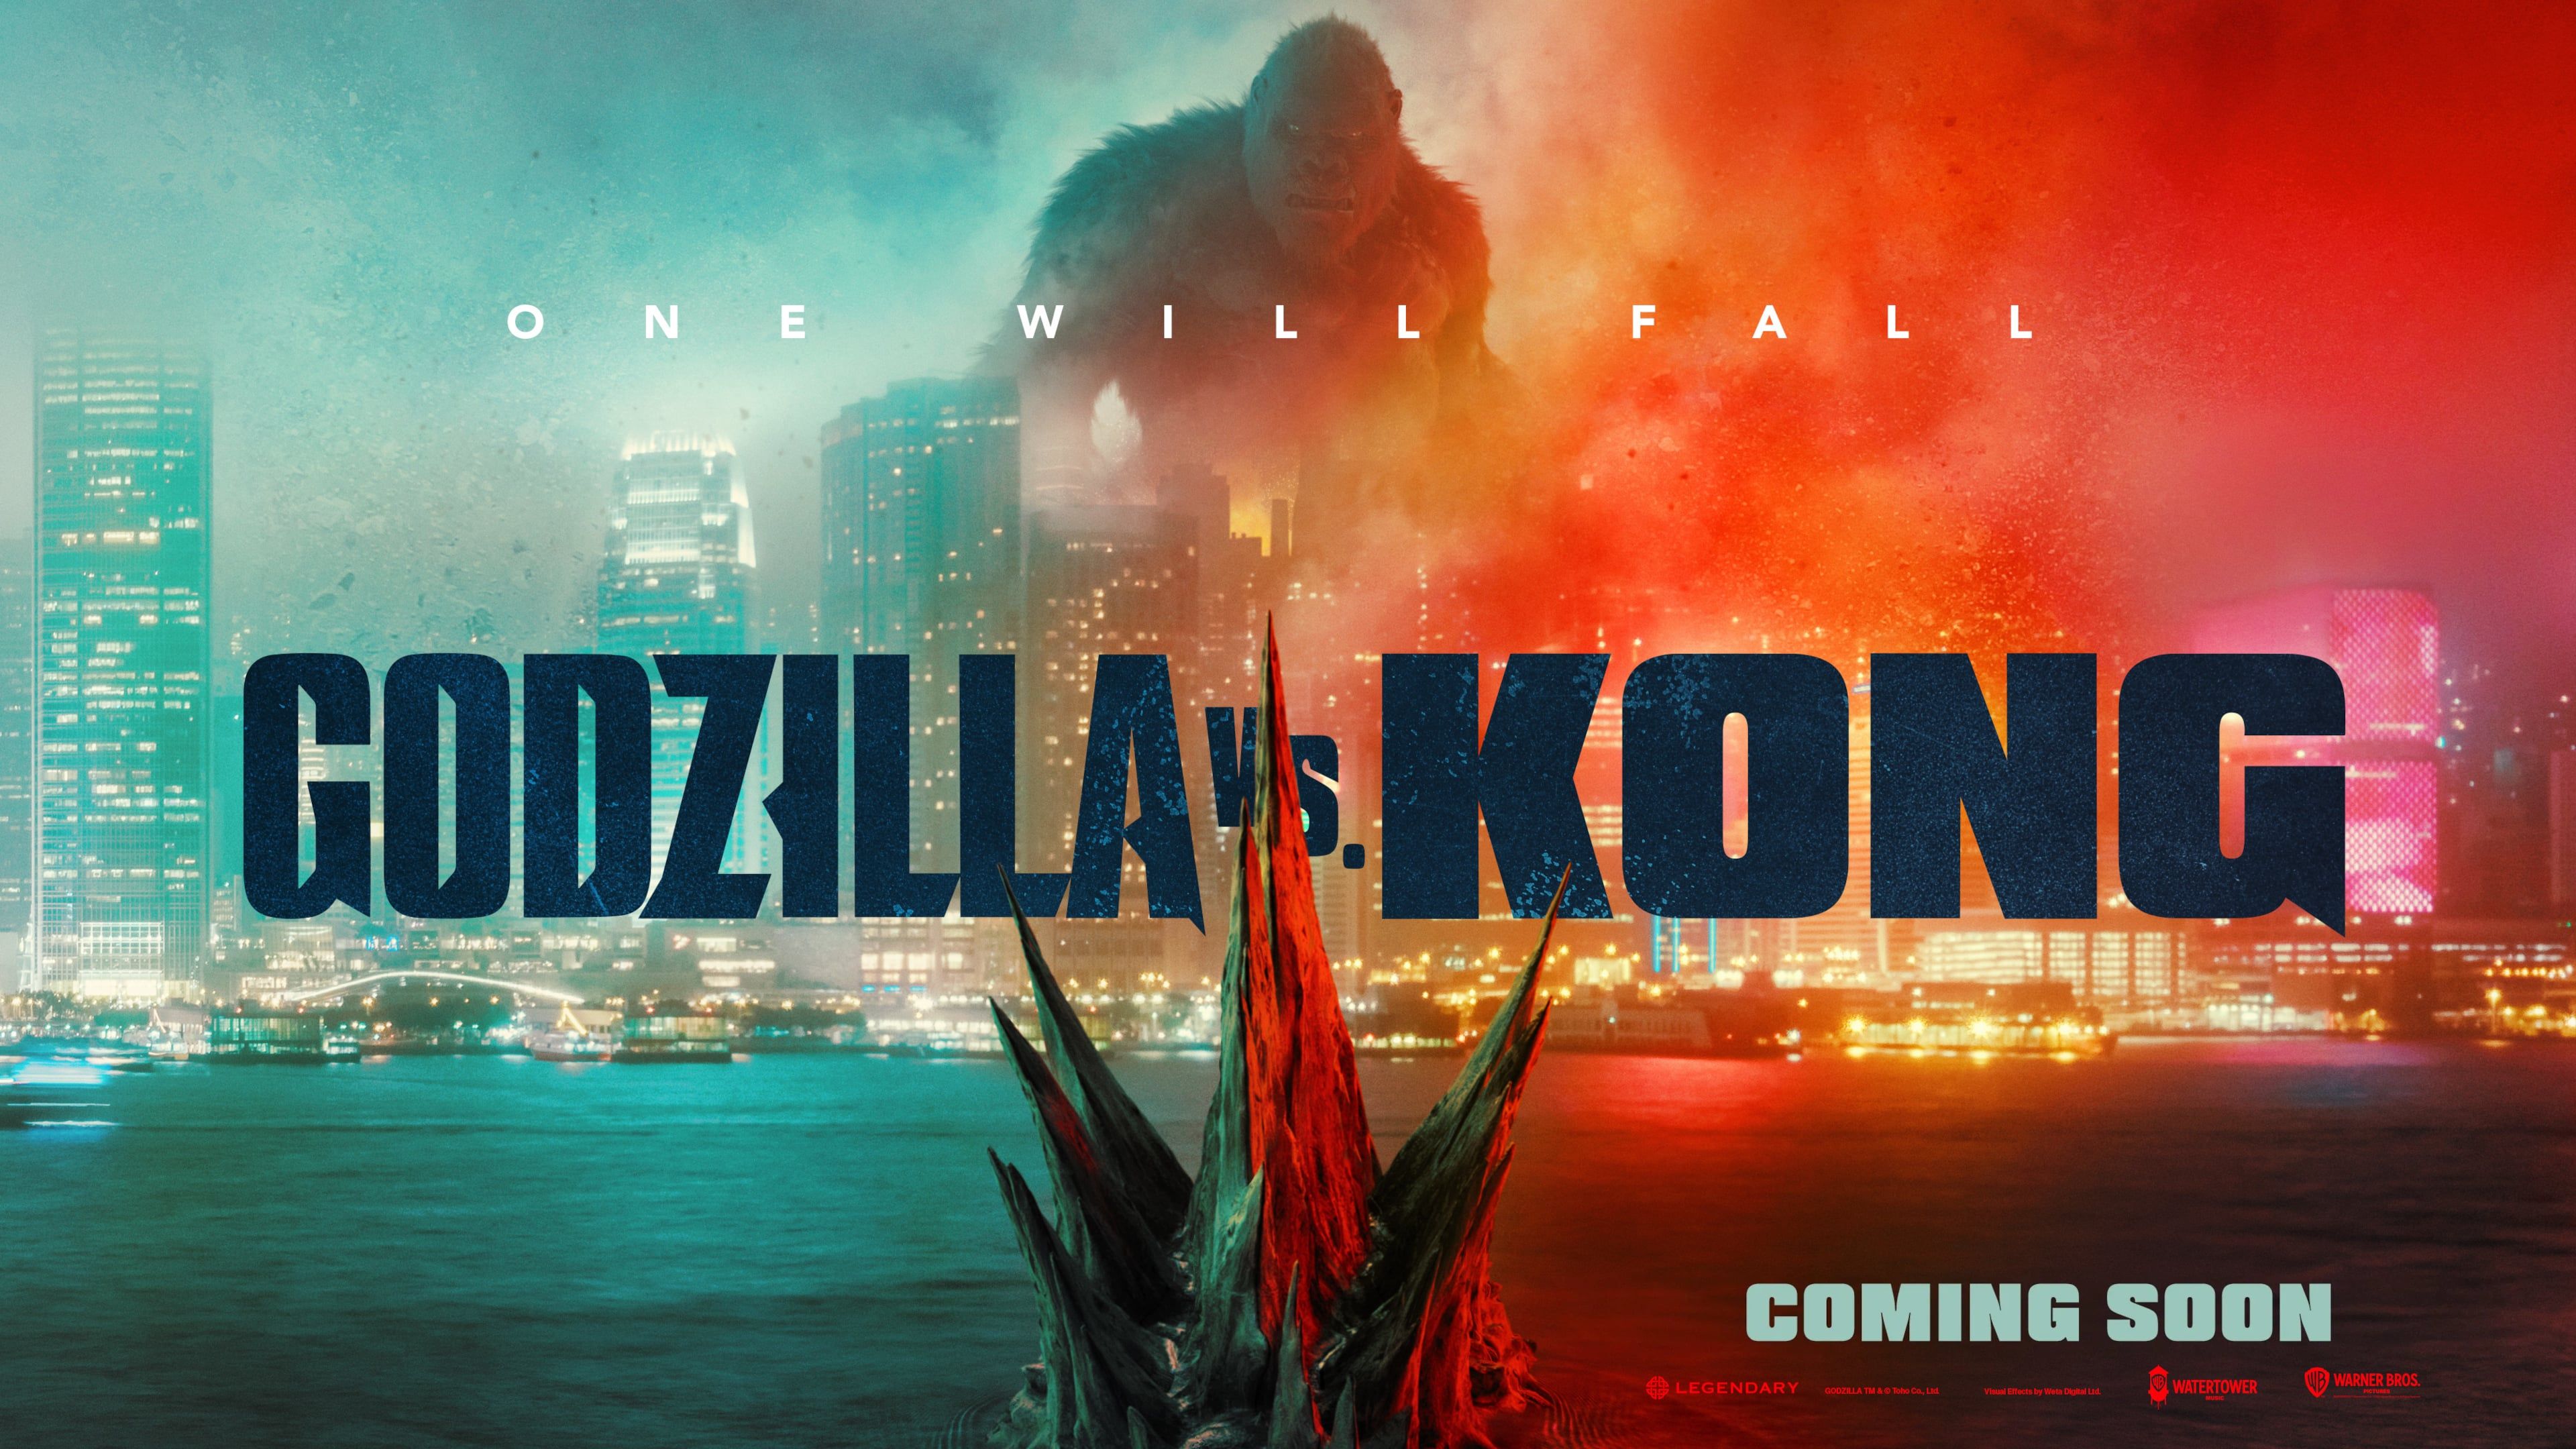 Godzilla Vs Kong Poster Wallpapers - Wallpaper Cave